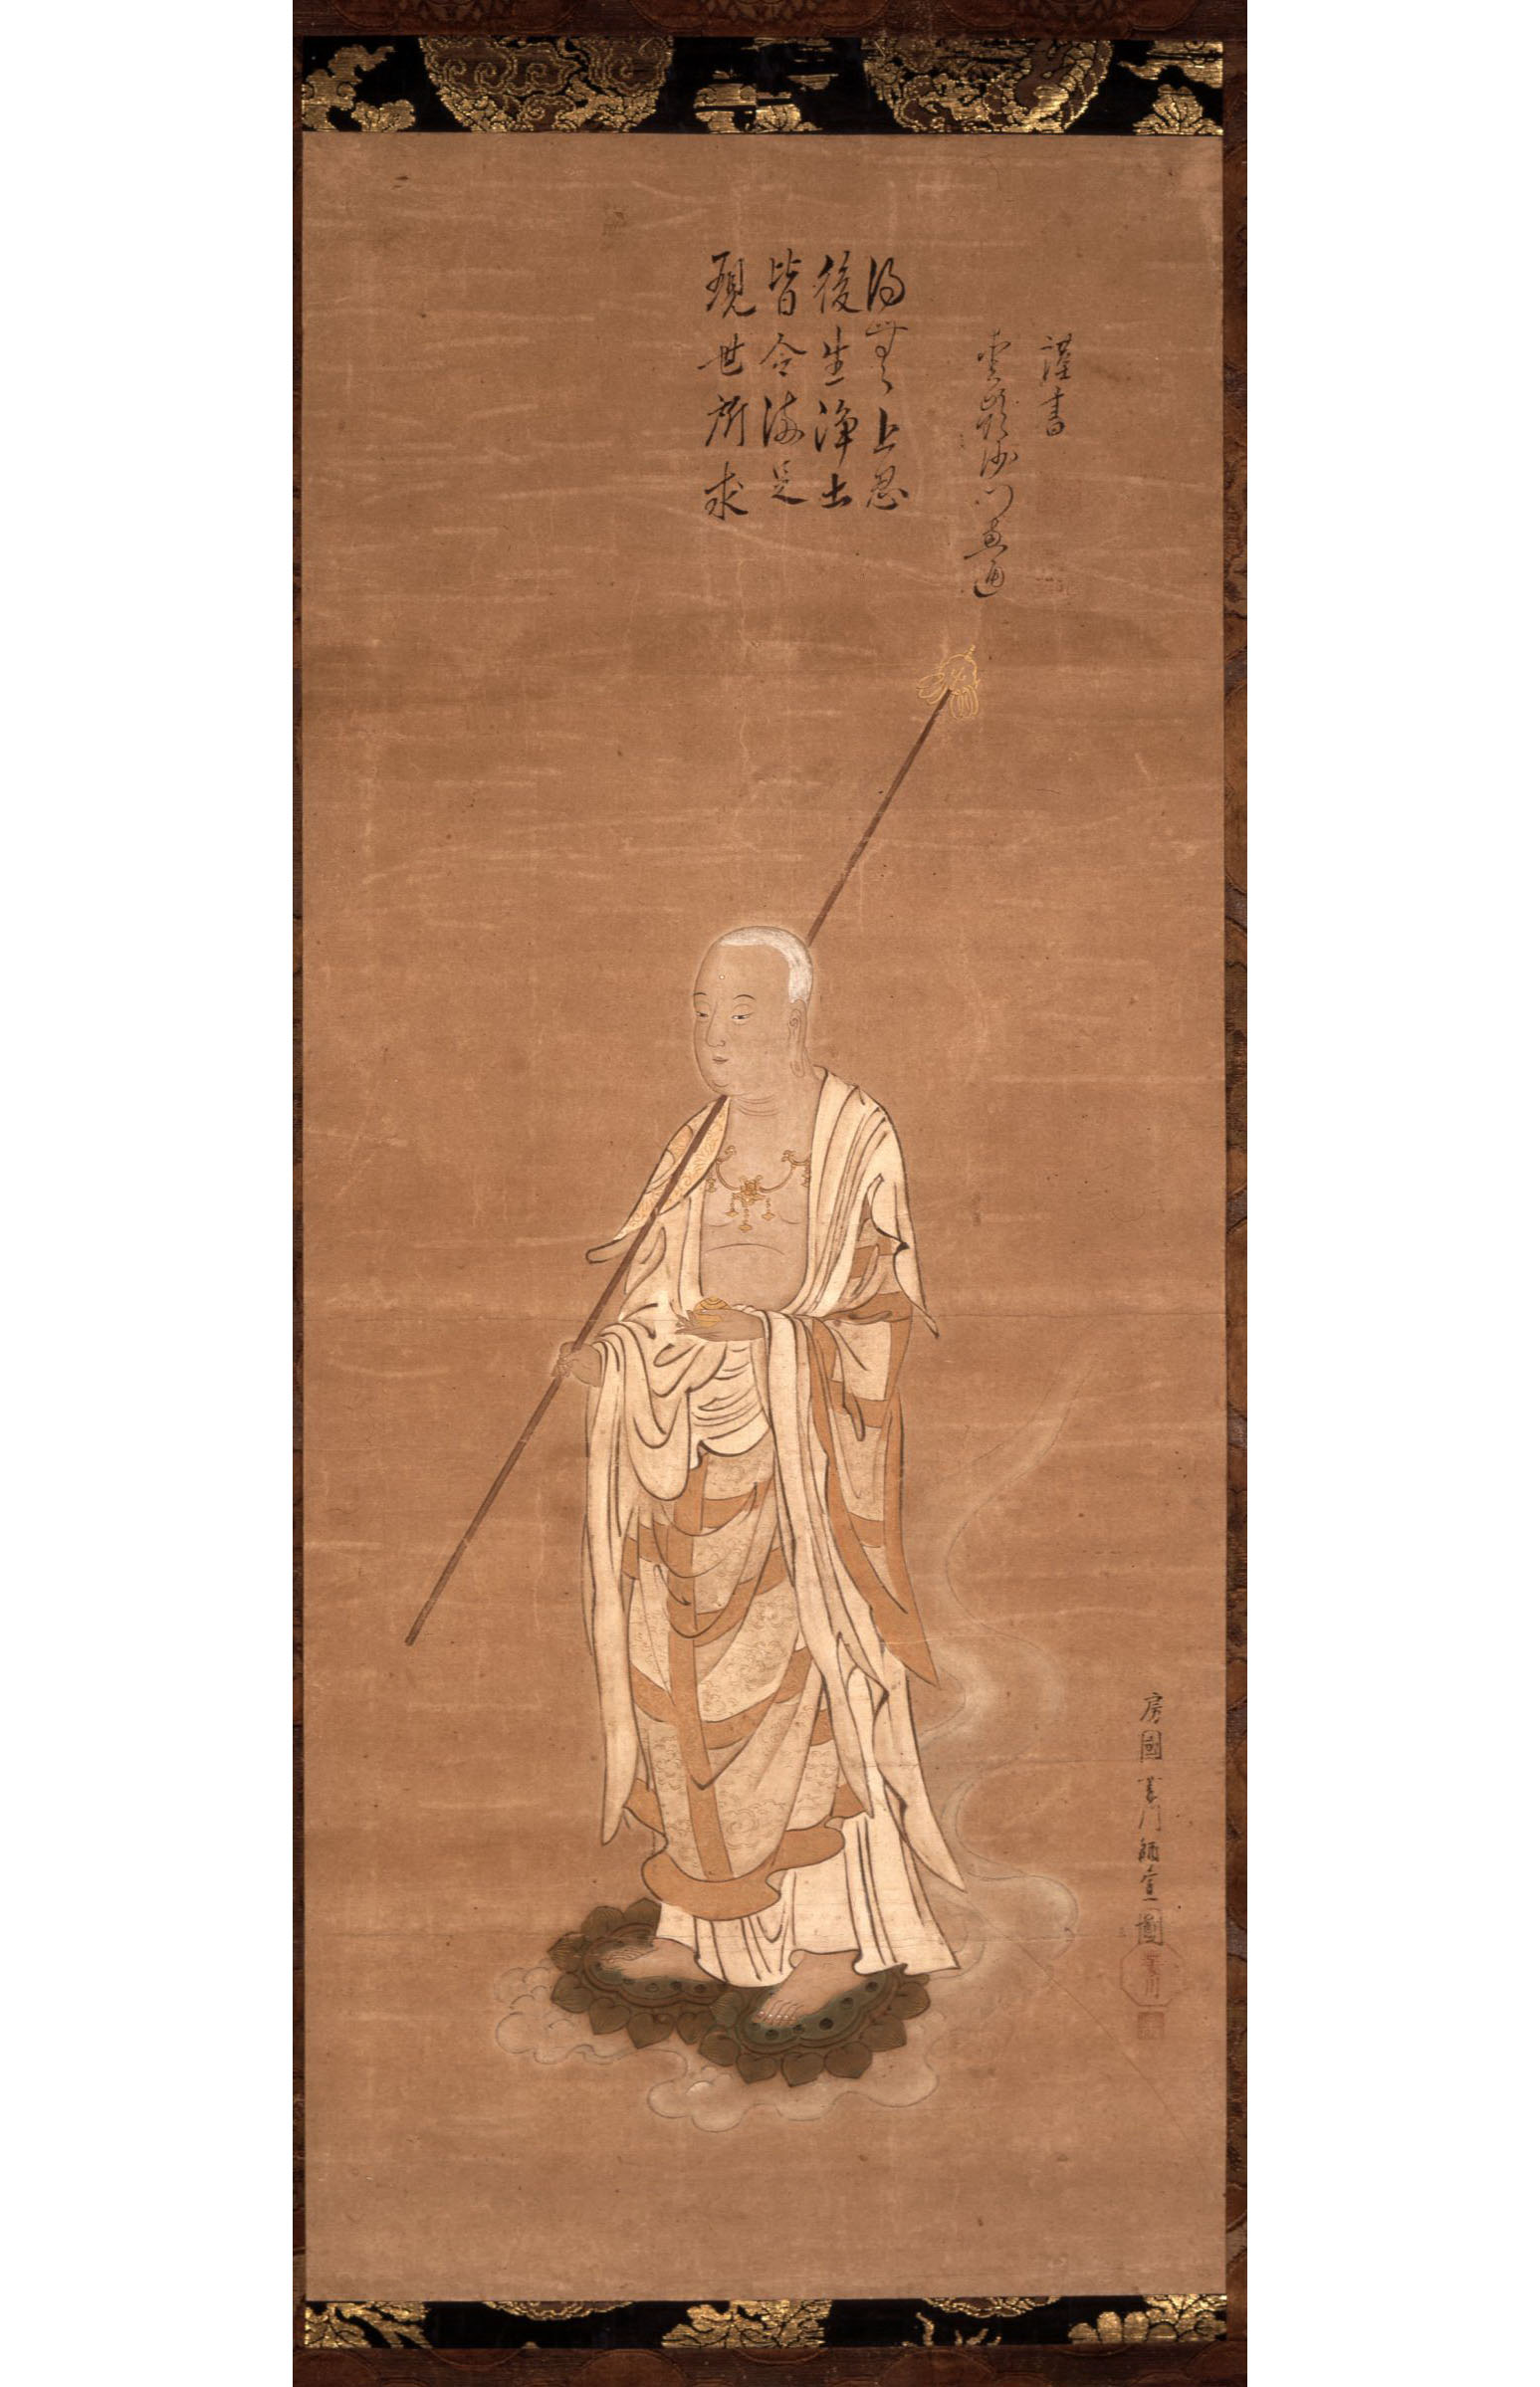 Моронобу Хисикава. Бодхисаттва Дзидзо стоит в белых монашеских одеждах на двух лотосах, покоящихся на облаке. 1681-1686.